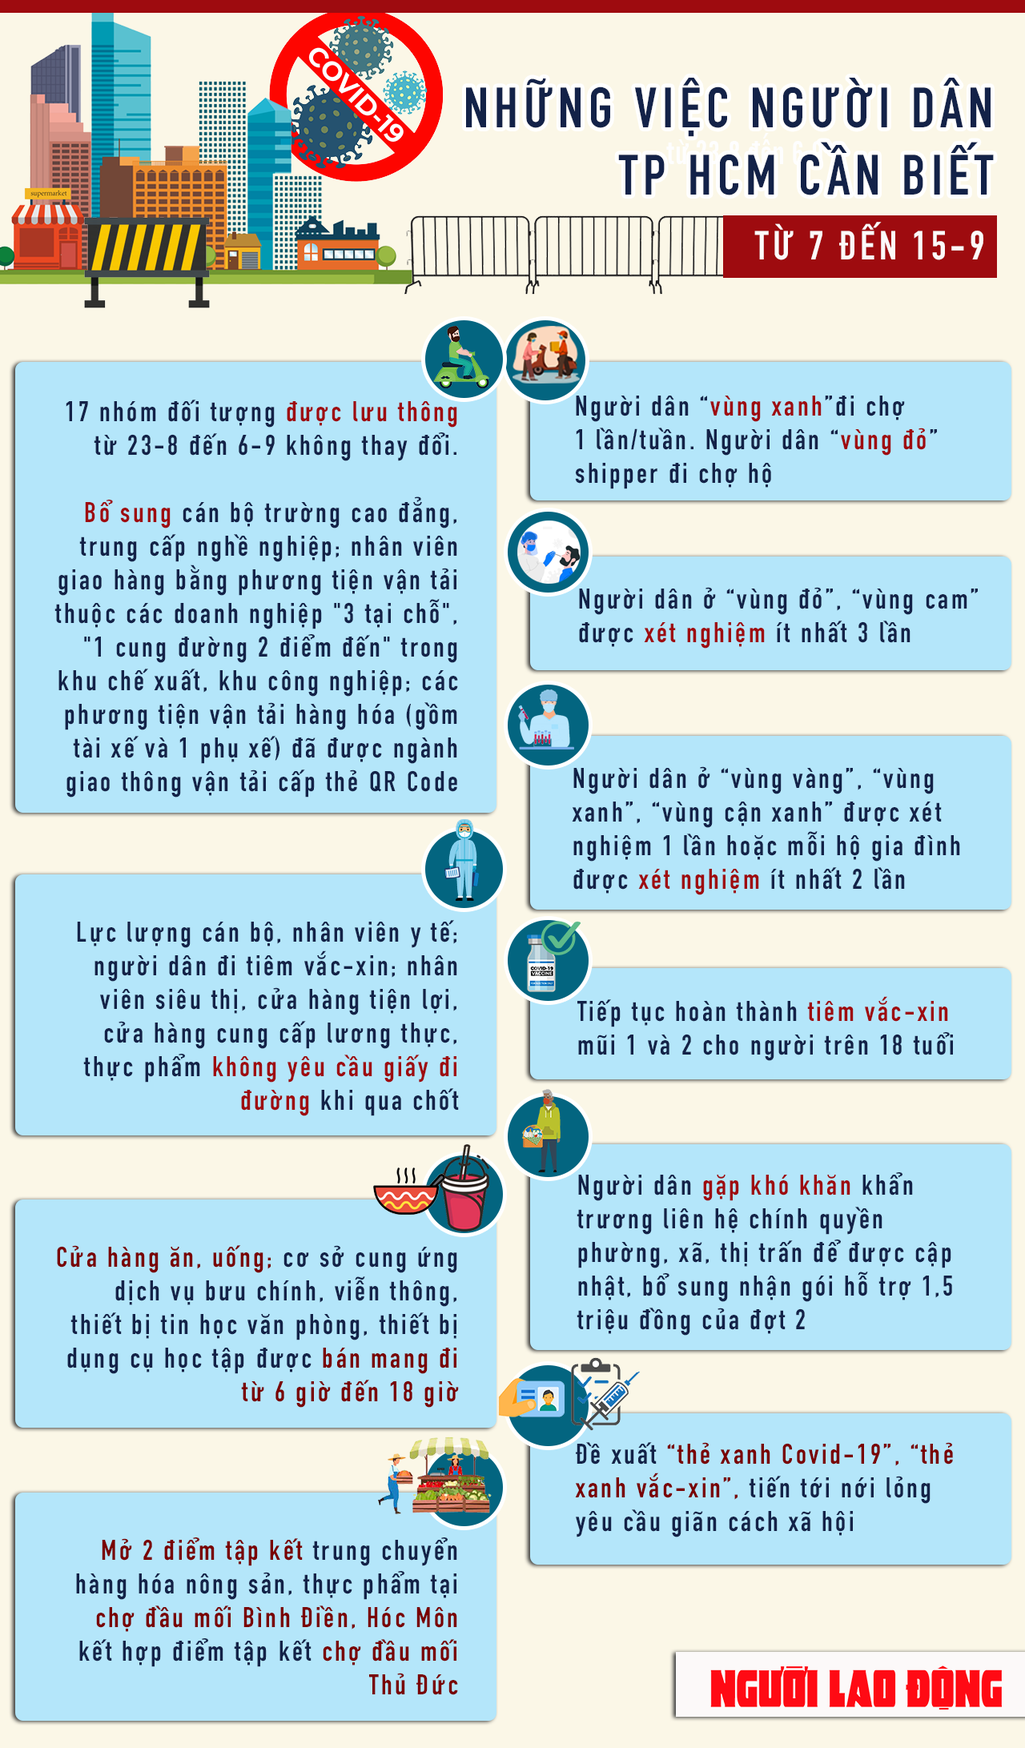 [Infographic] Những việc người dân TP HCM cần biết từ ngày 7 đến 15-9 - 1